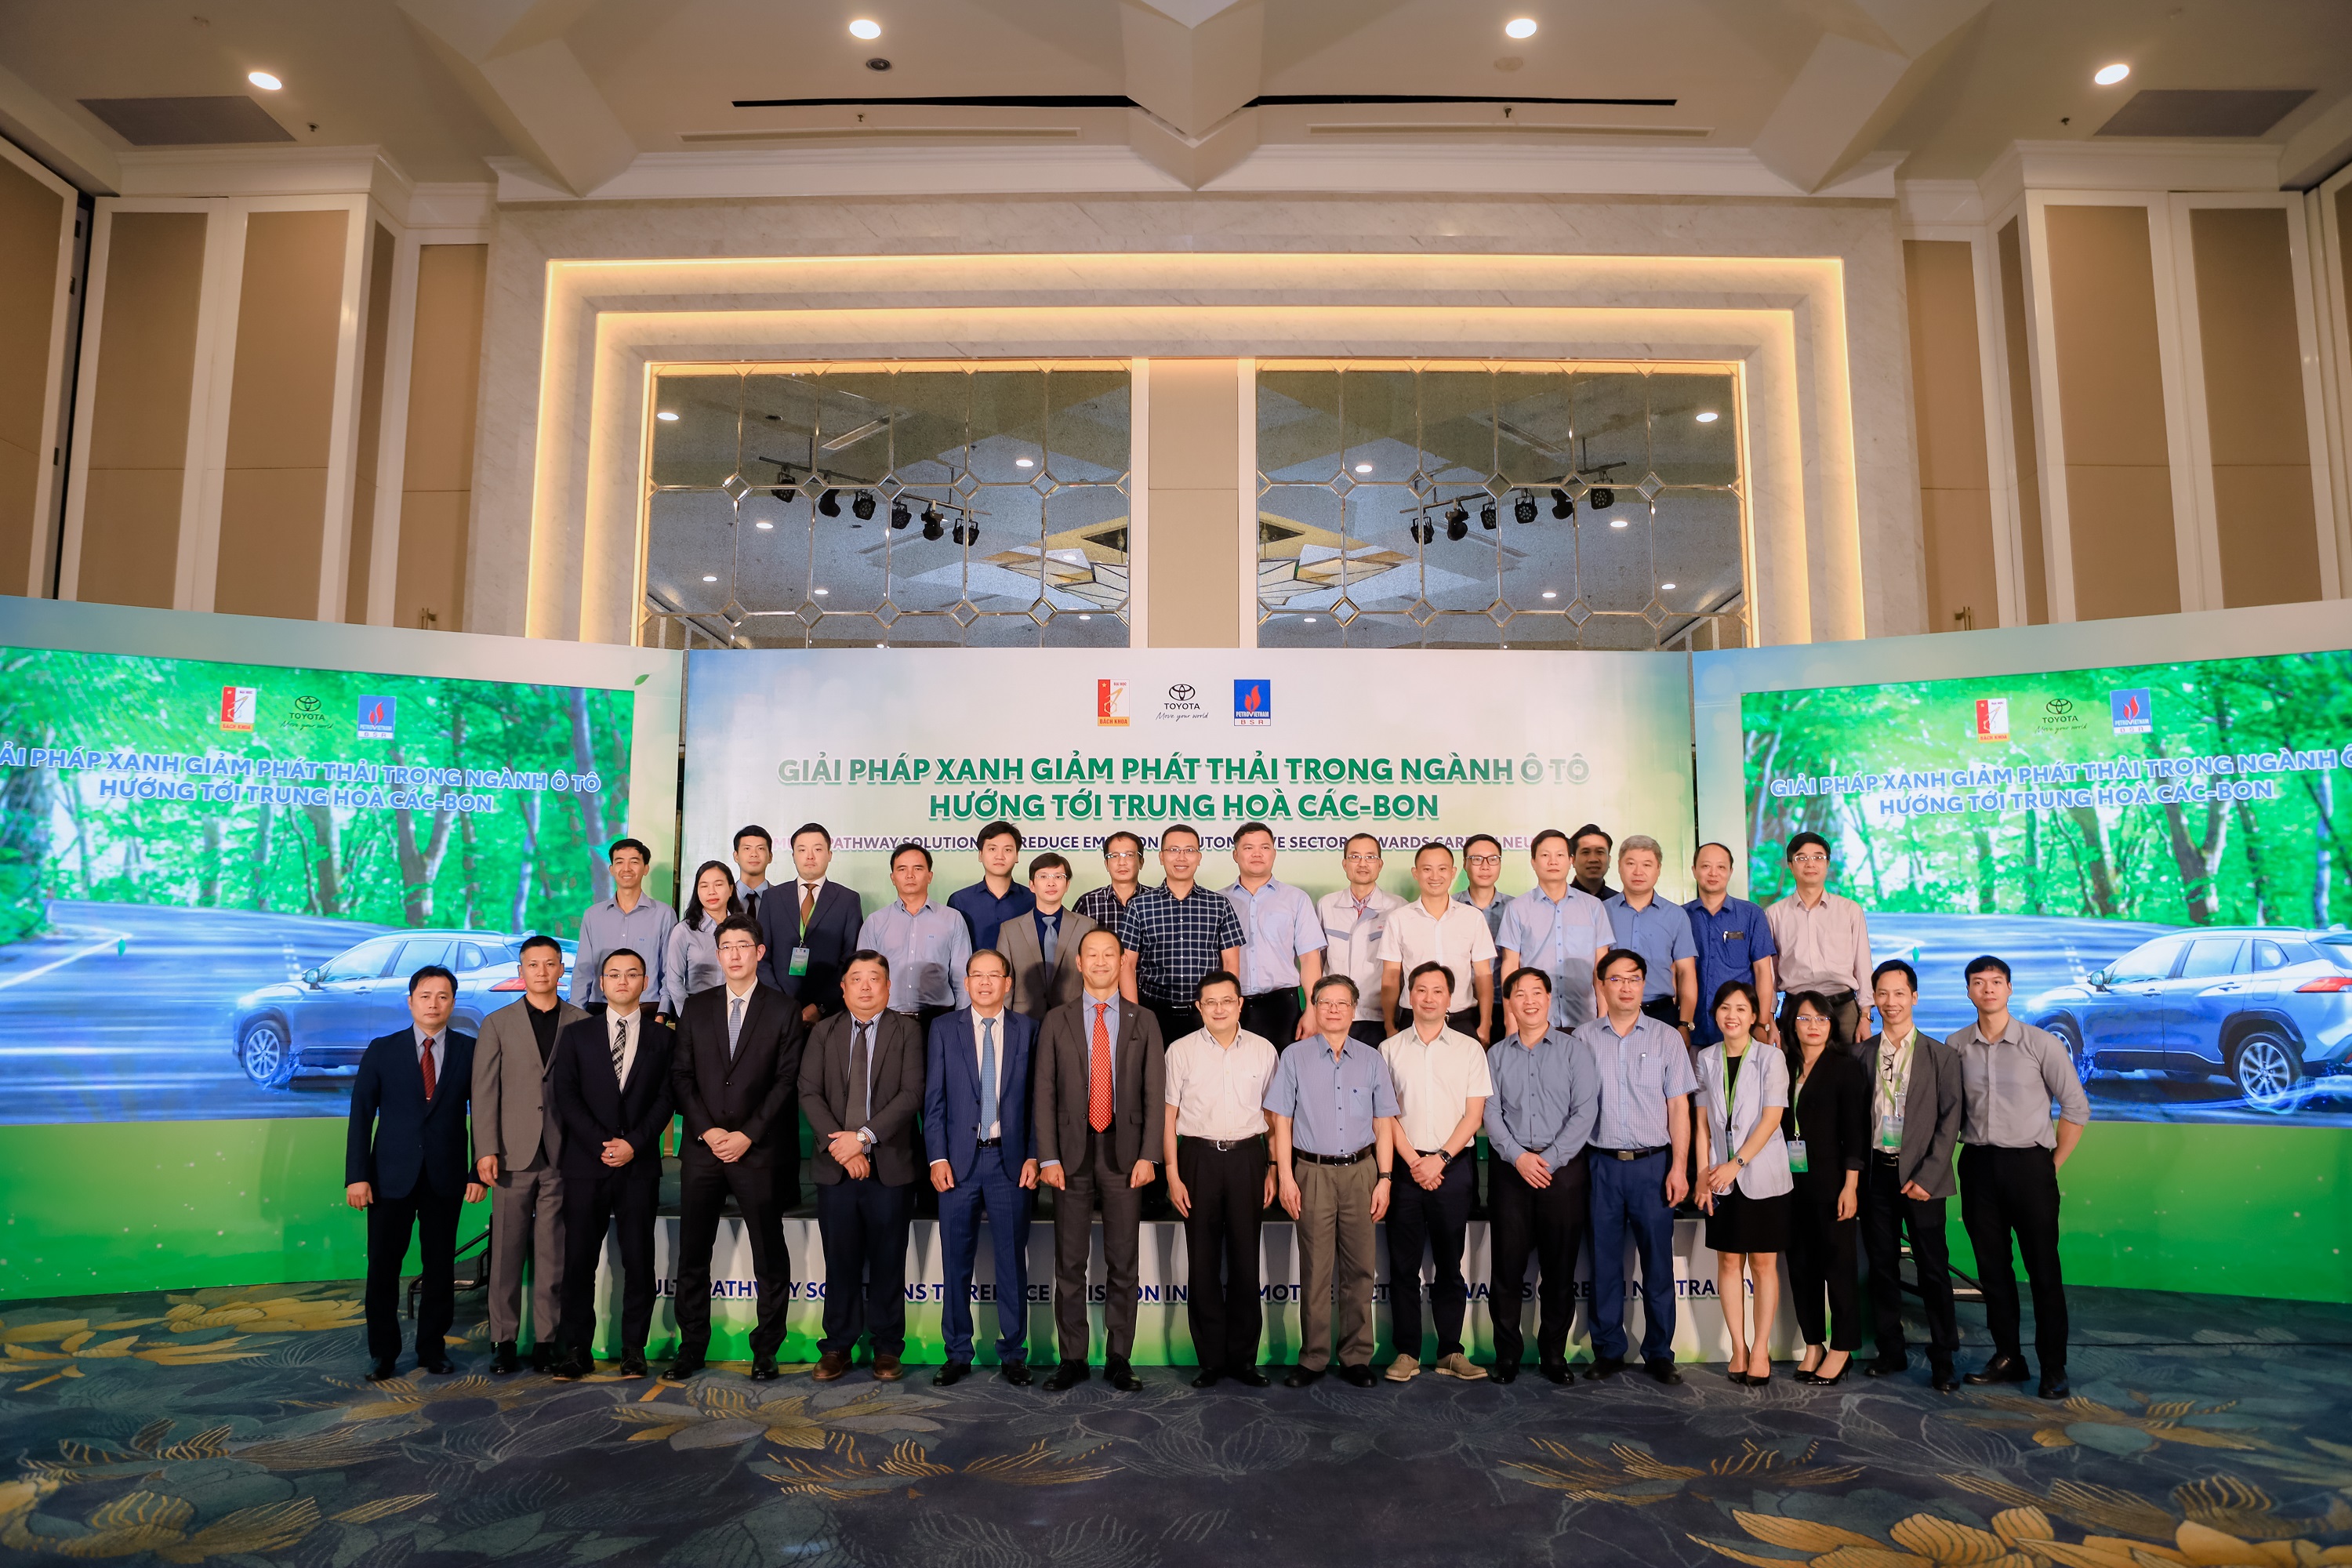 Toyota Việt Nam tổ chức Hội thảo “Giải pháp xanh giảm phát thải  trong ngành ô tô hướng tới trung hòa carbon”